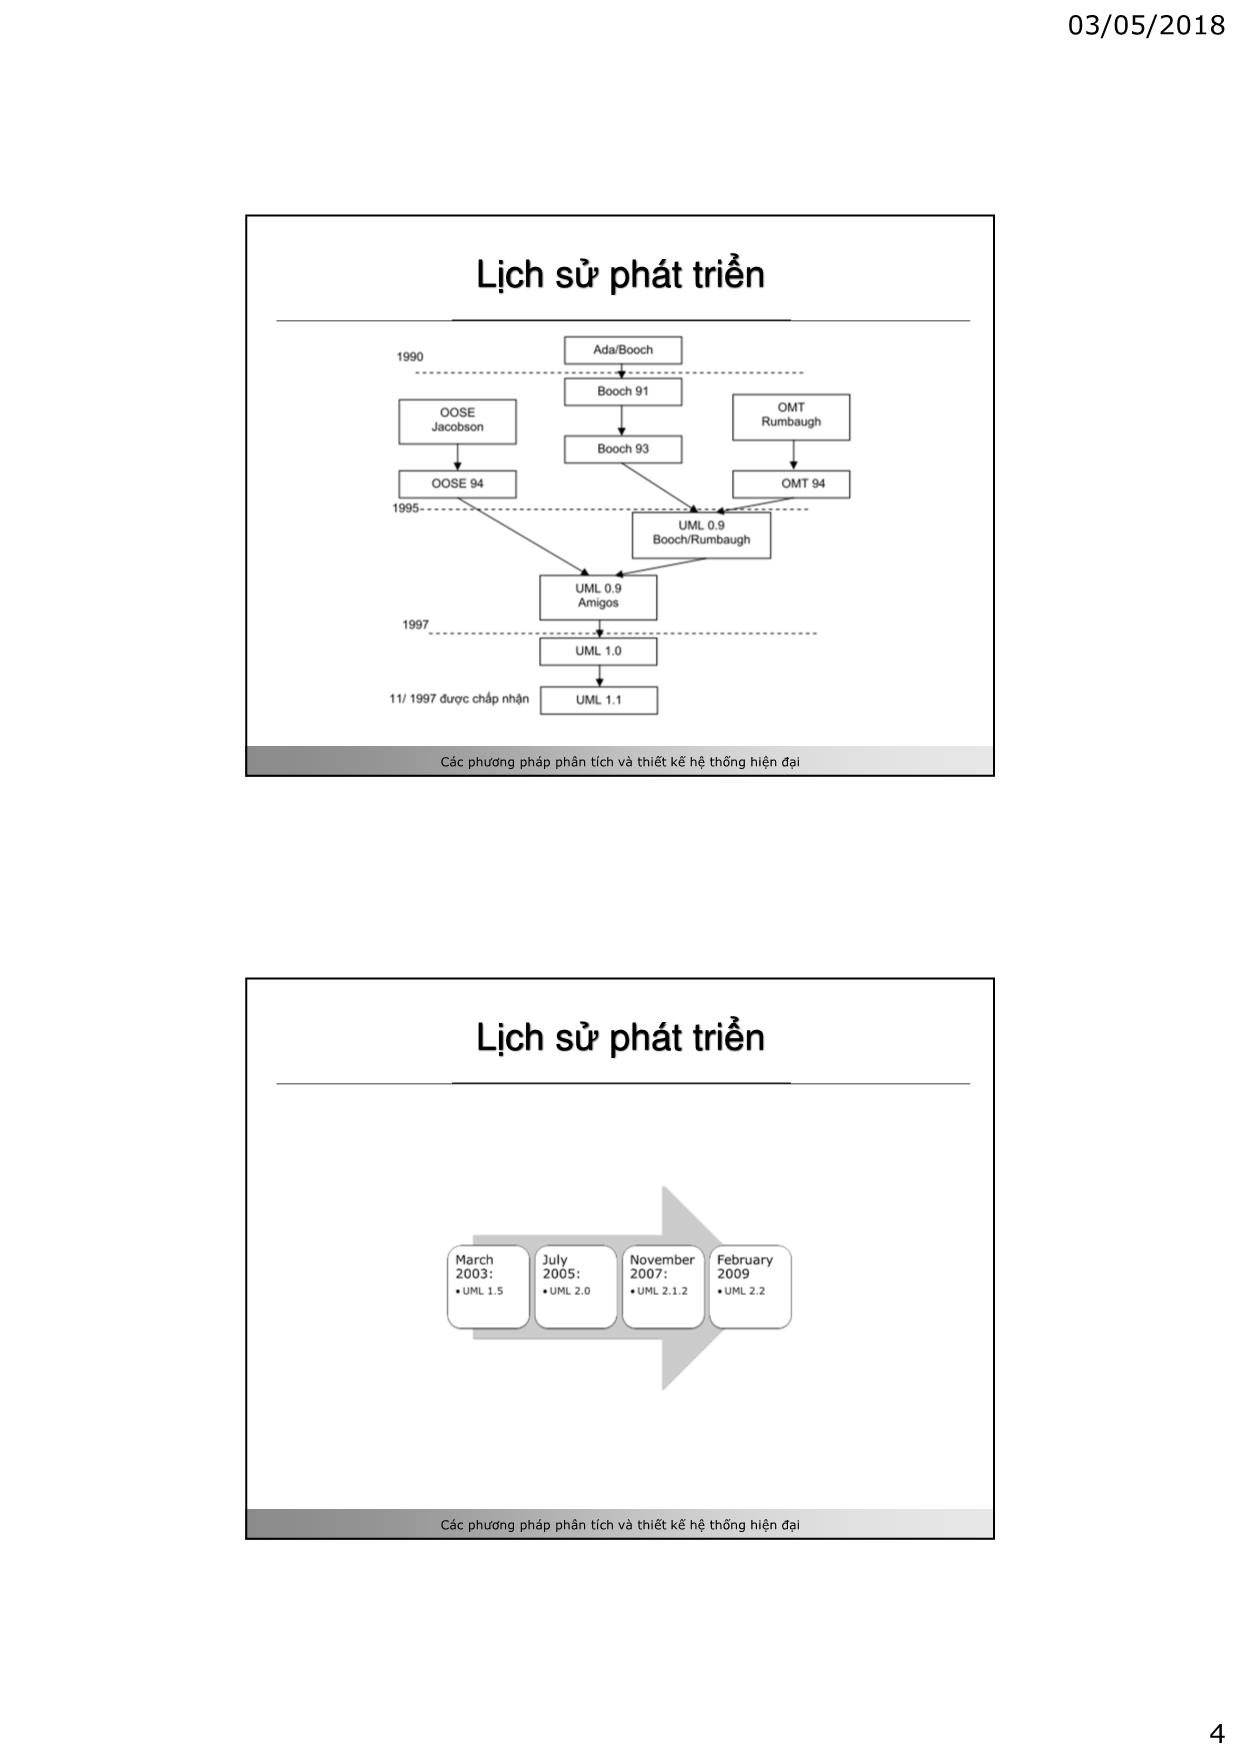 Bài giảng Các phương pháp phân tích và thiết kế hệ thống hiện đại - Chương 2: Mô hình hóa hệ thống và ngôn ngữ UML - Vũ Chí Cường trang 4